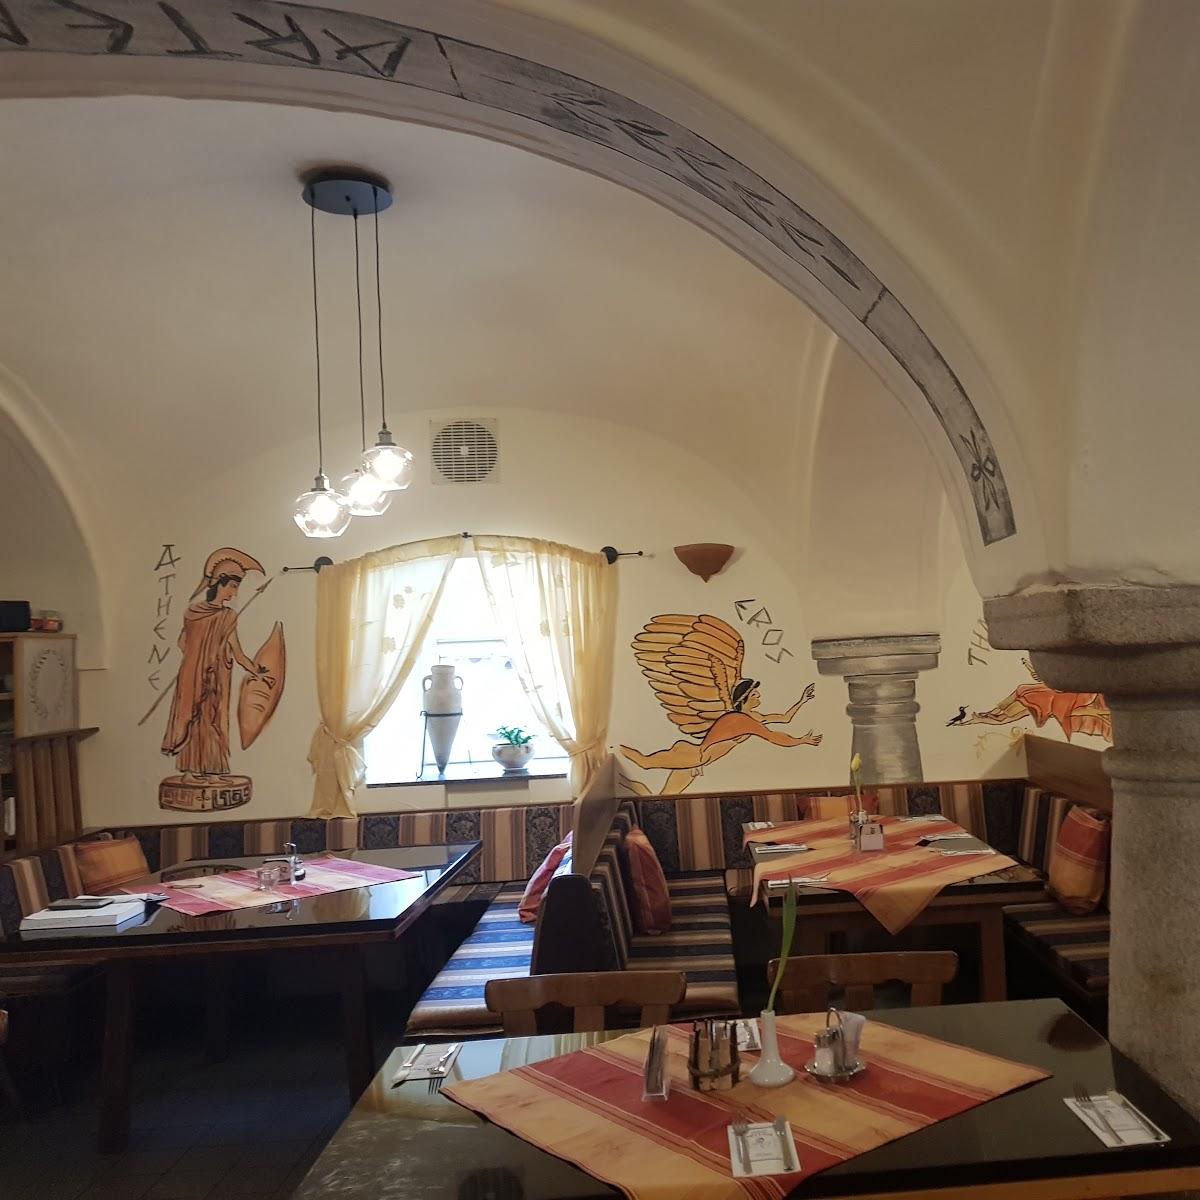 Restaurant "Artemis" in Simbach